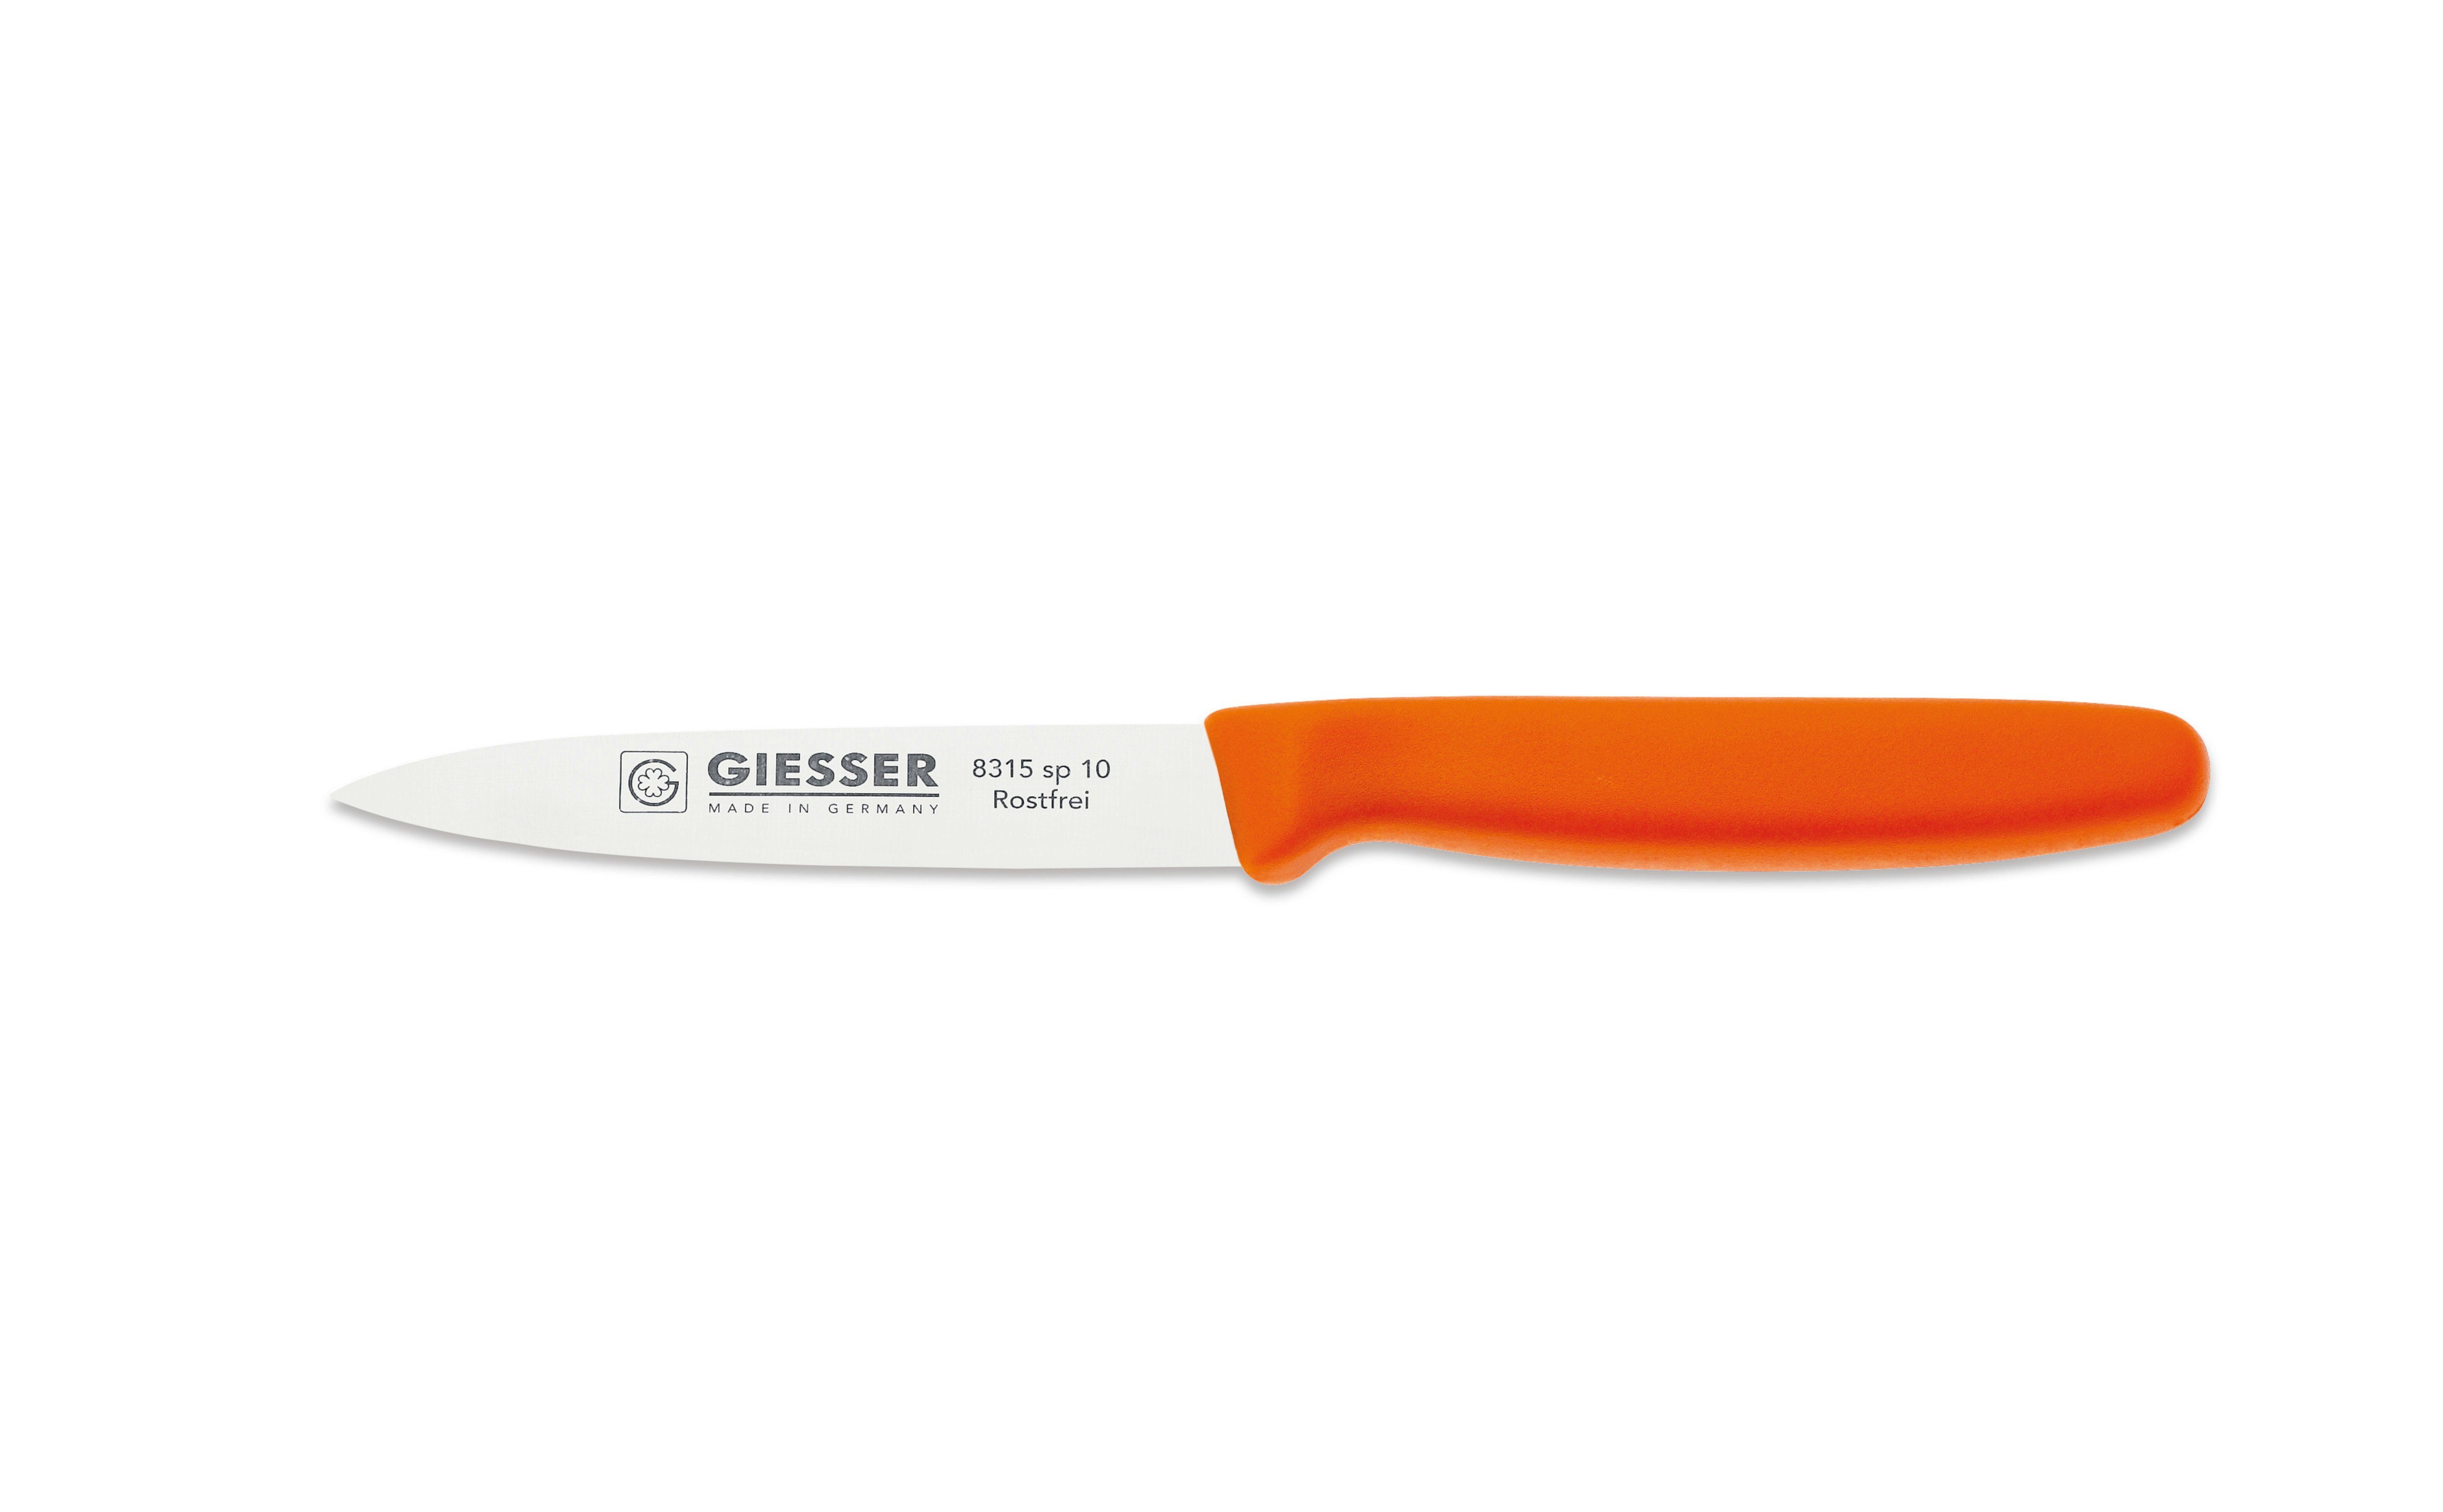 Gemüsemesser oder Orange sp ohne 8/10/12, Wellenschliff mit 8315 Messer 3mm Küchenmesser Giesser Spickmesser